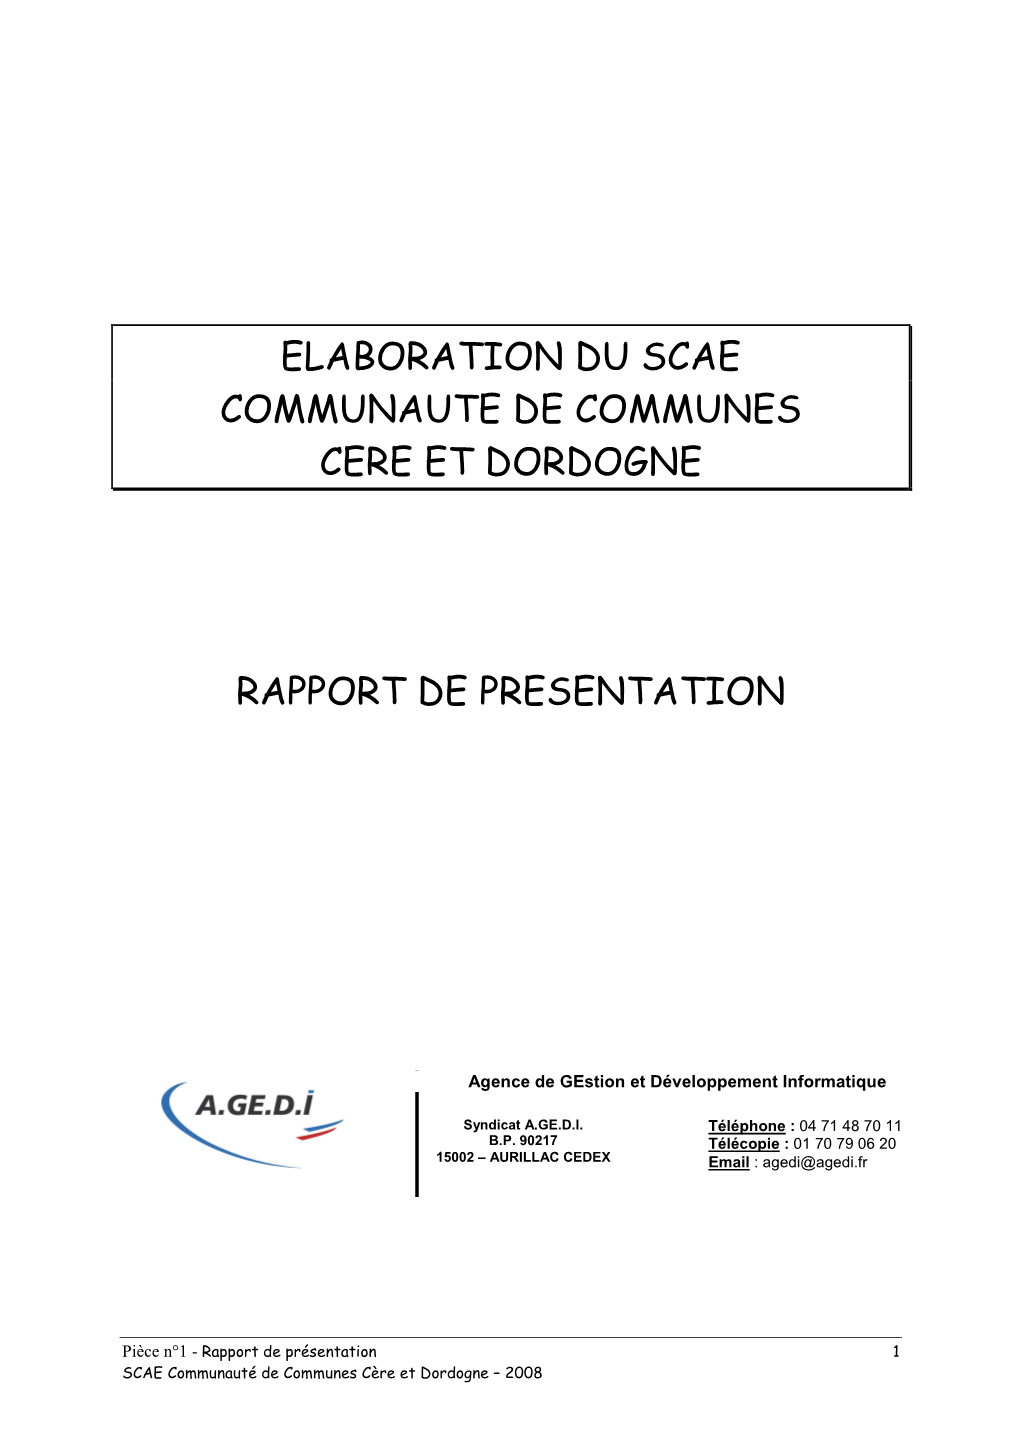 Elaboration Du Scae Communaute De Communes Cere Et Dordogne